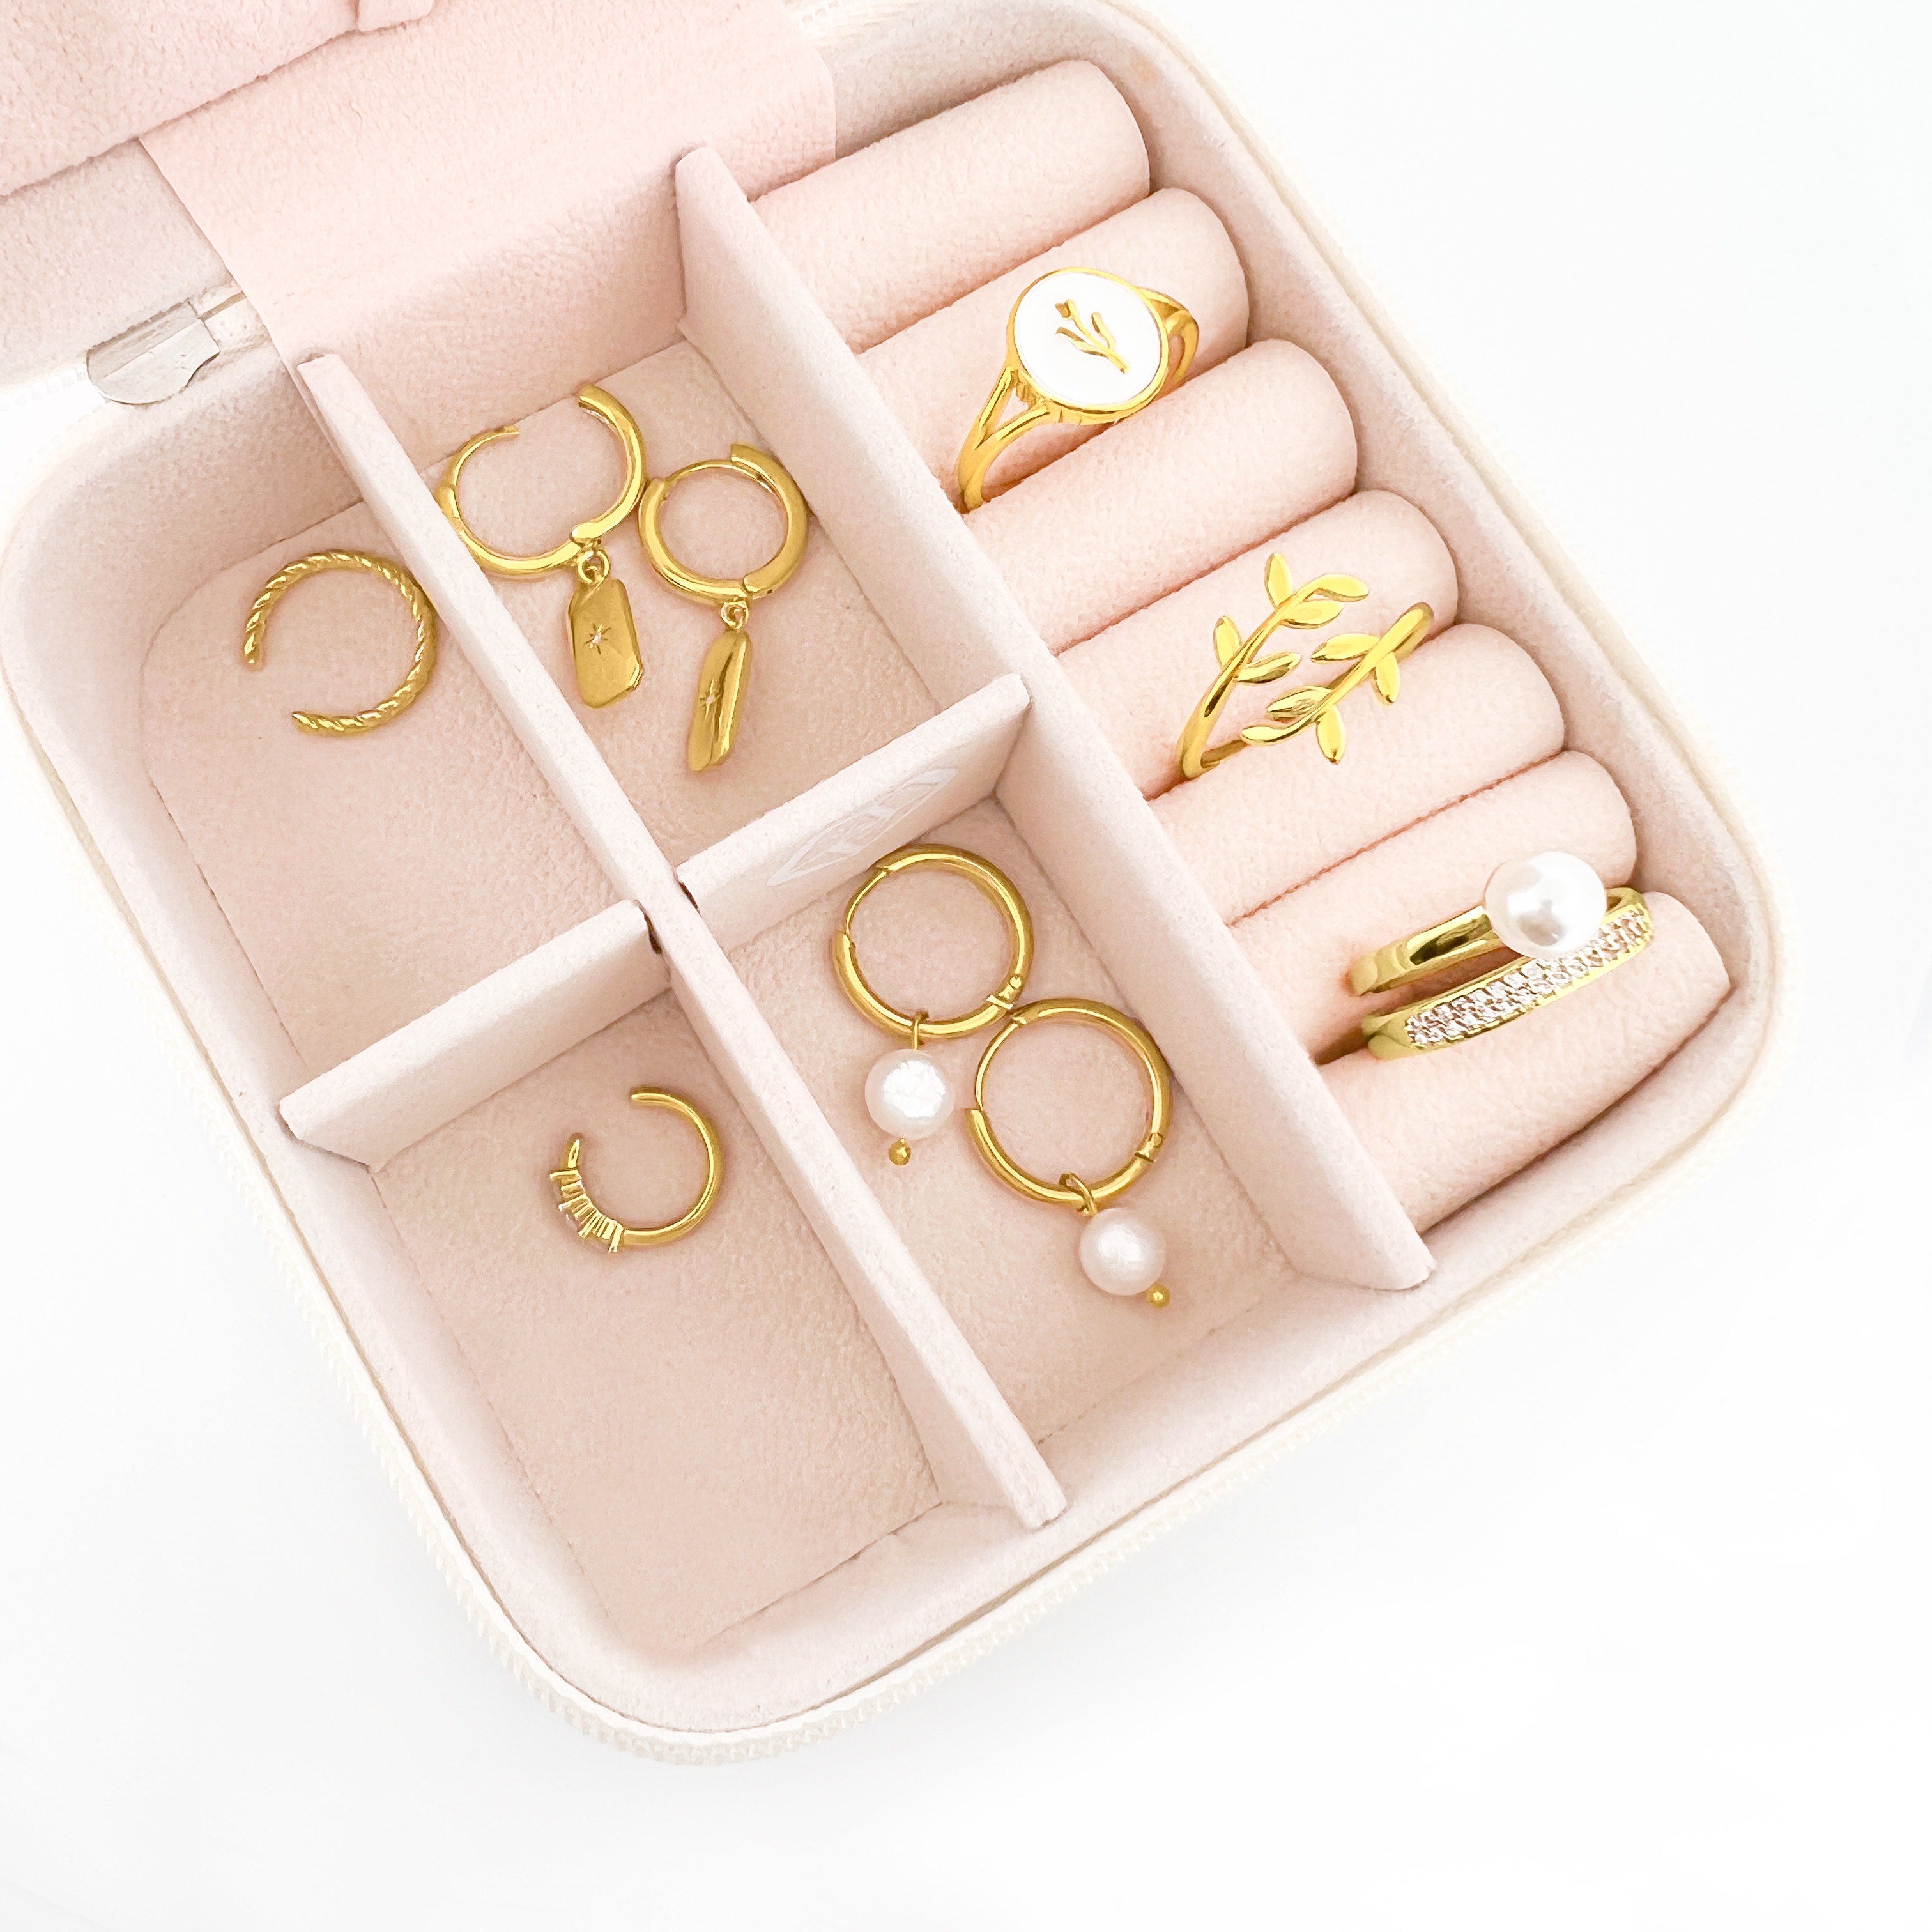 Jewelry Storage Case - AMADI Jewelry